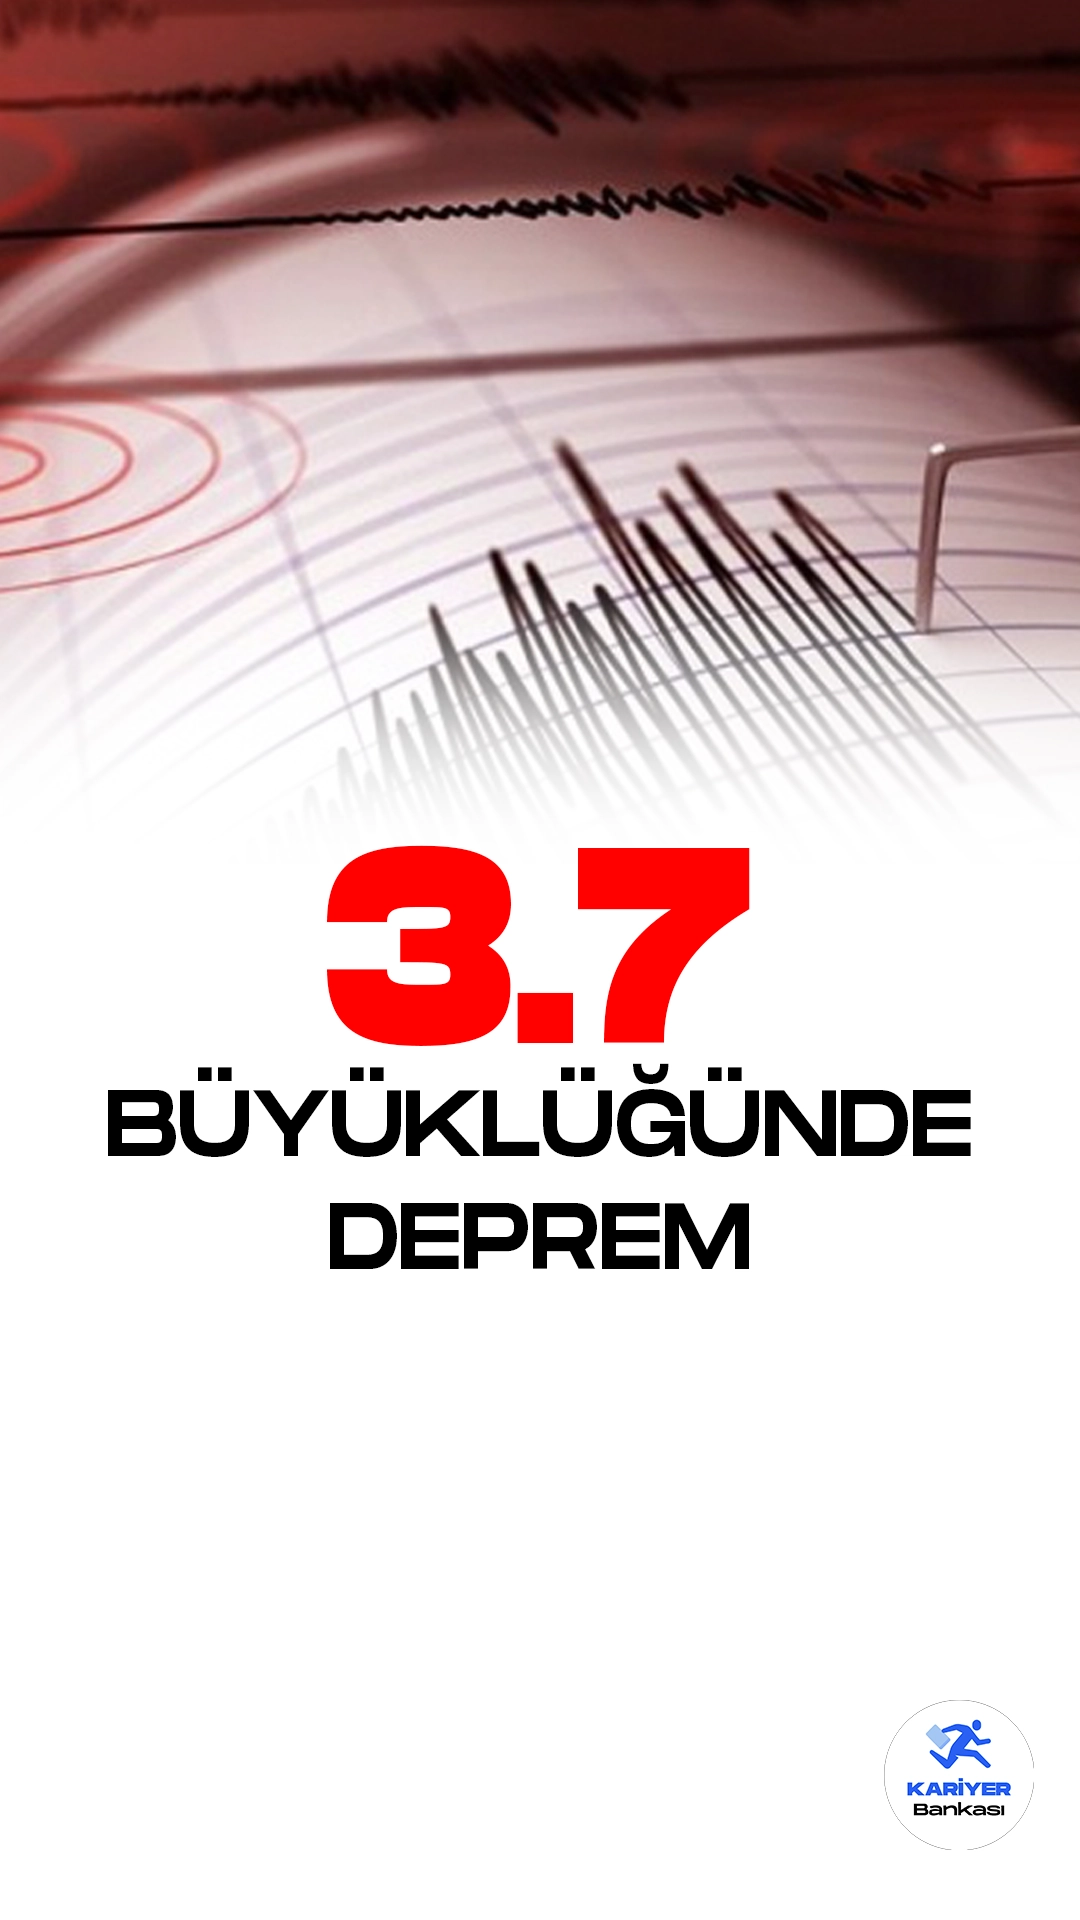 Malatya'da 3.7 Büyüklüğünde Deprem Meydana Geldi. Boğaziçi Üniversitesi Kandilli Rasathanesi ve Deprem Araştırma Enstitüsü tarafından yayımlanan son dakika duyurusuna göre Malatya Begre-Doğanşehir'de 3.7 büyüklüğünde deprem meydana geldiği aktarıldı.